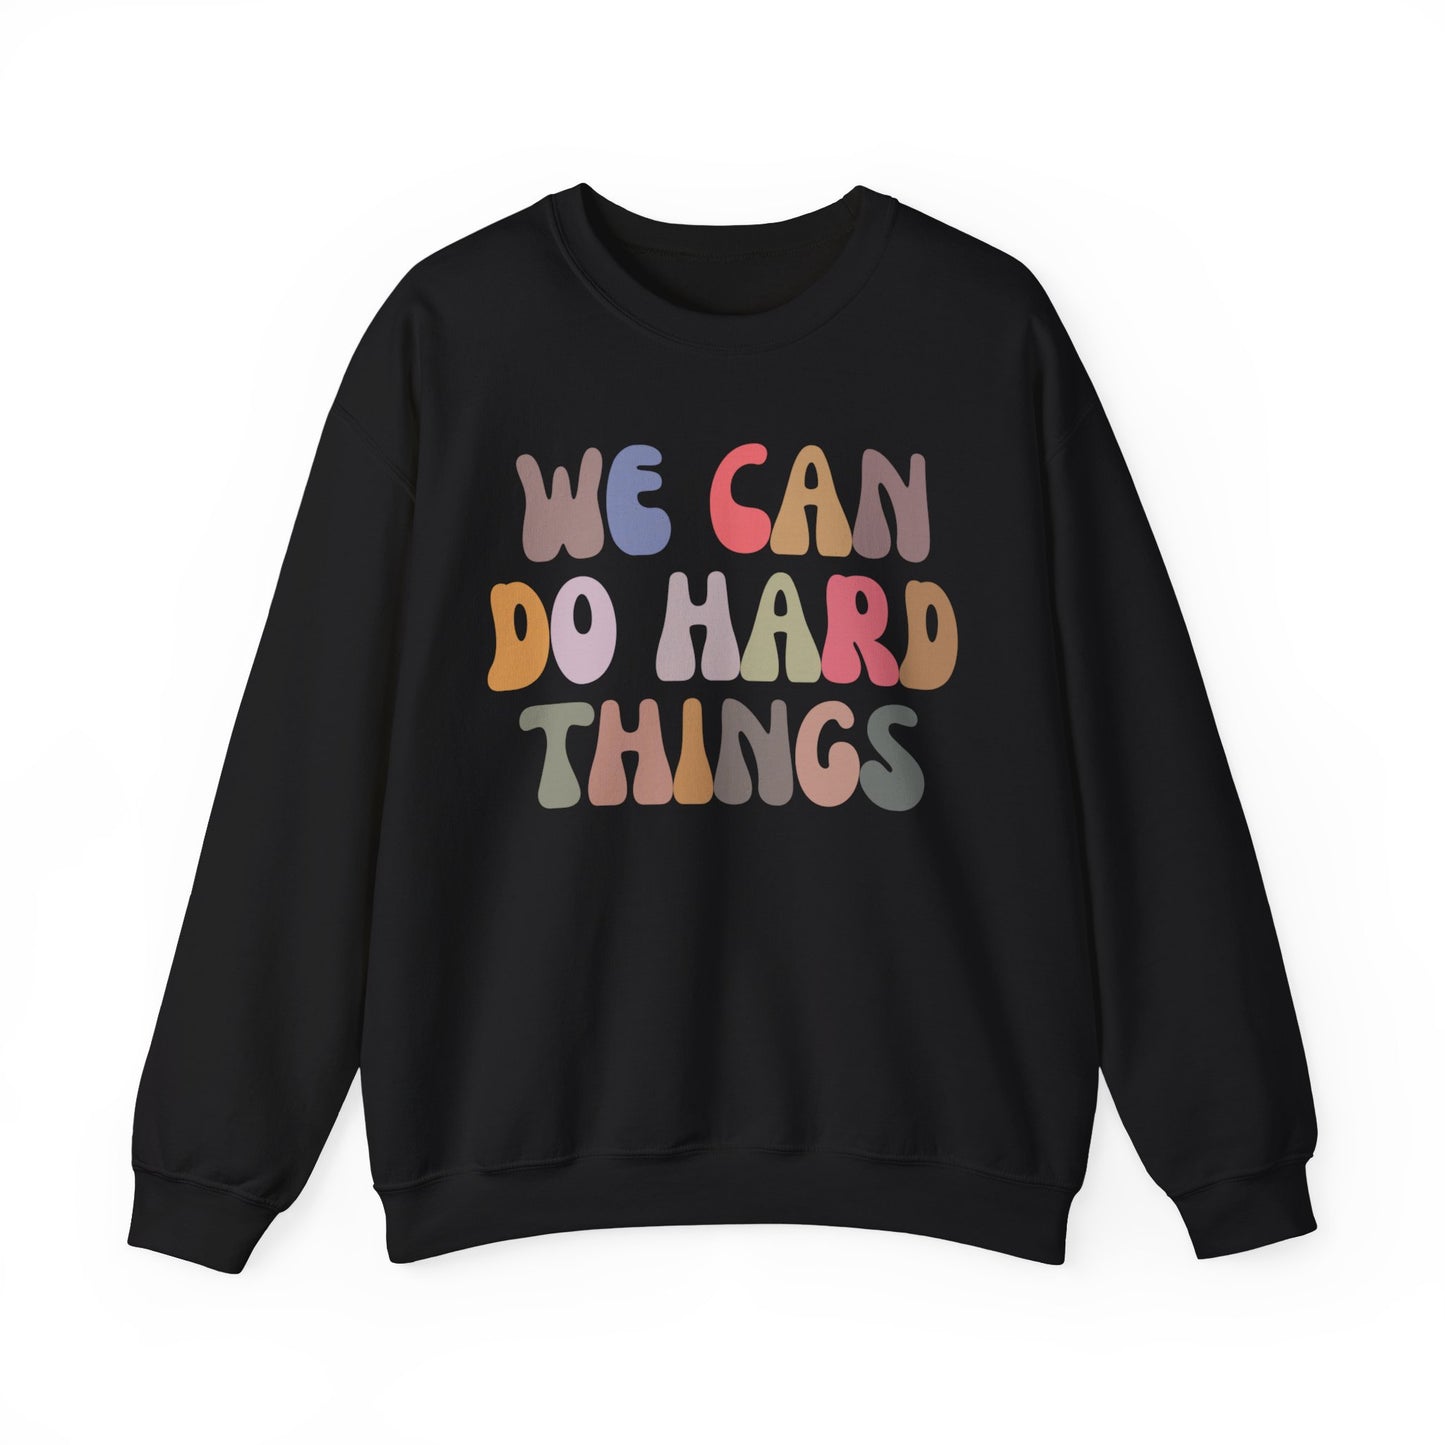 We Can Do Hard Things Sweatshirt, Take a Risk Sweatshirt, Strive Hard, State Testing Sweatshirt, Inspirational Sweatshirt for Women, S1466